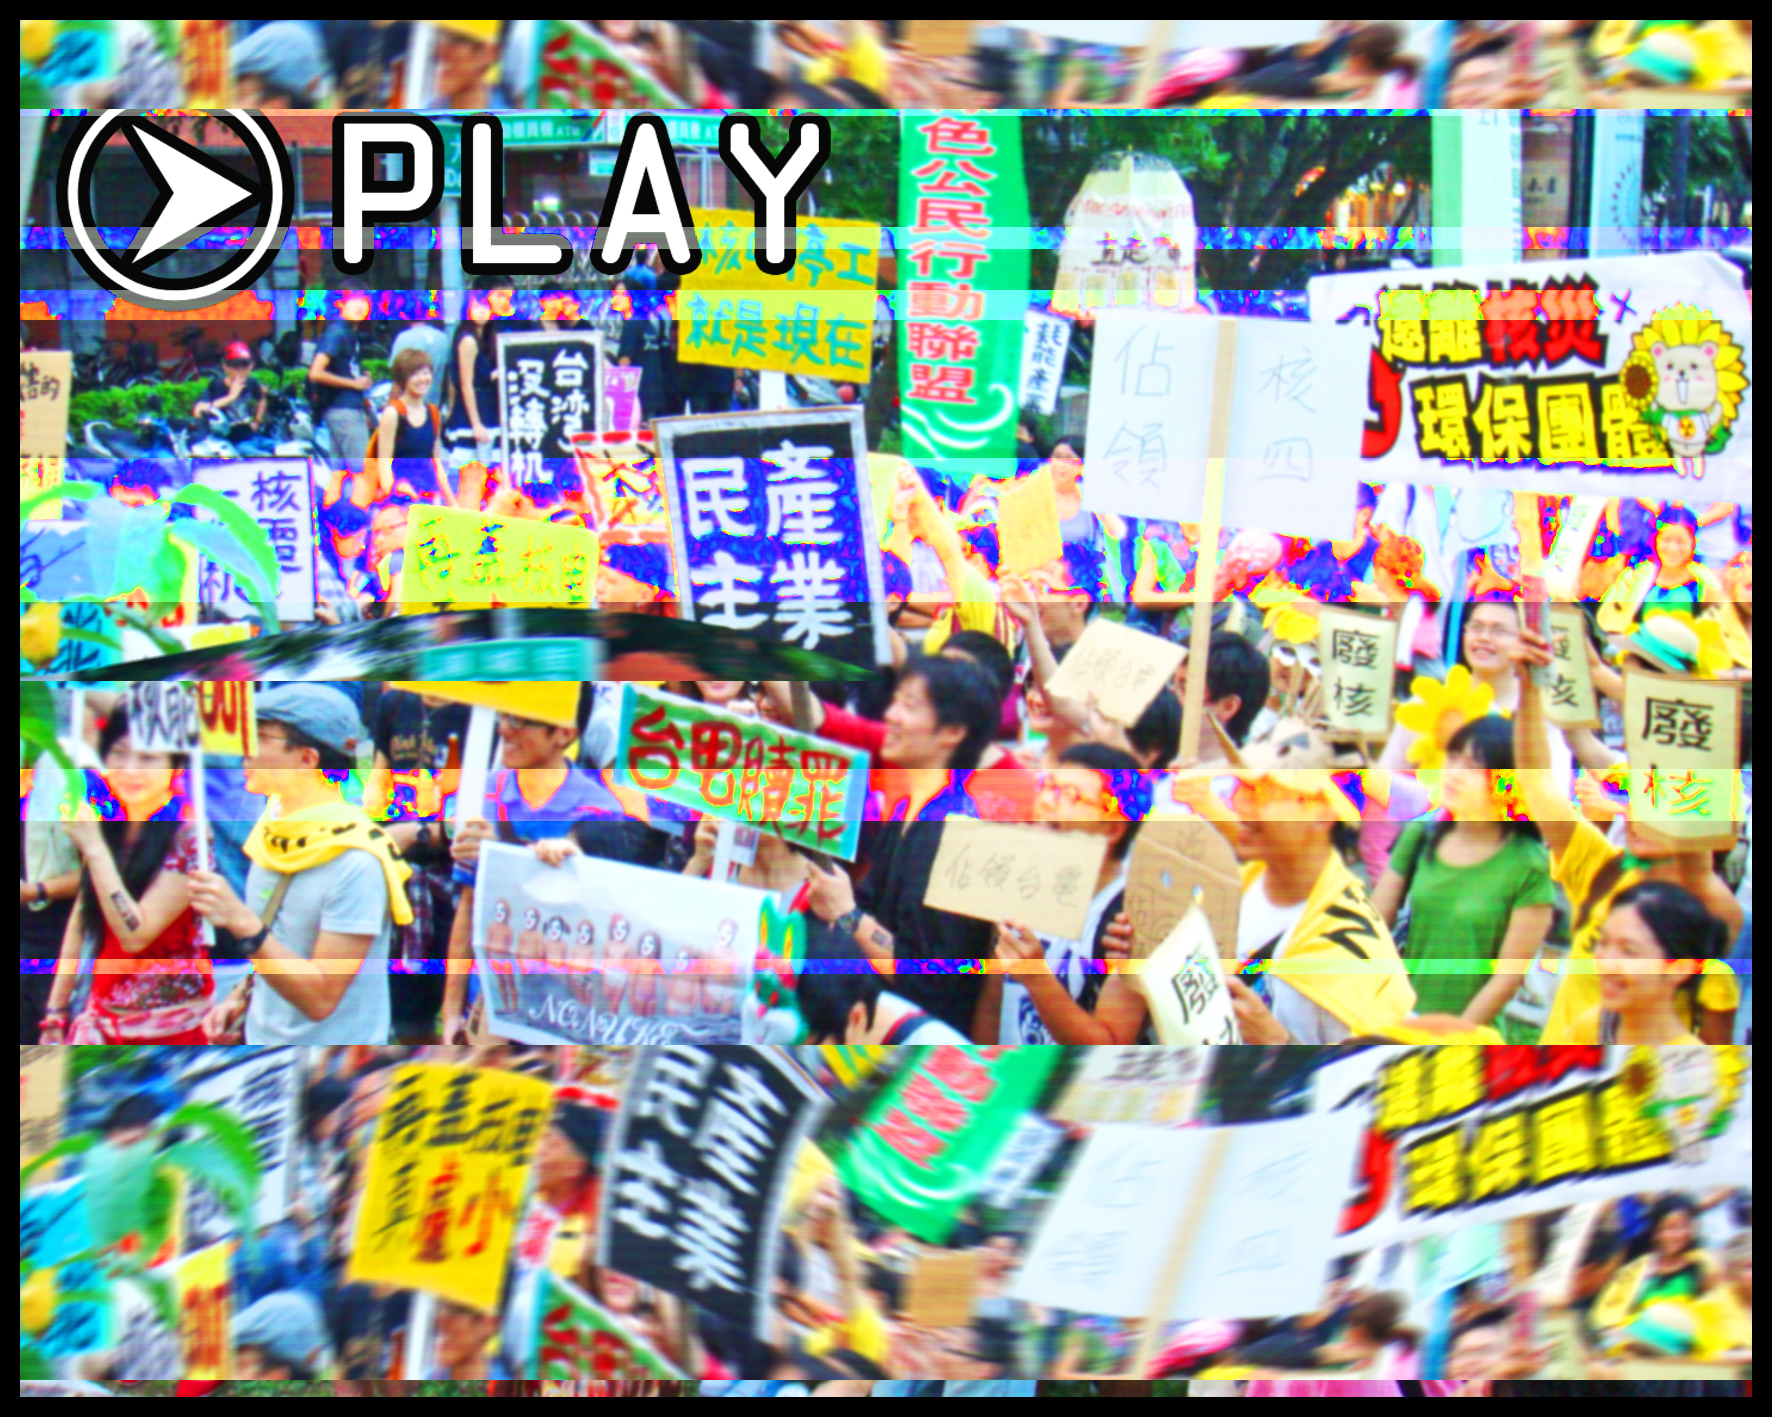 Umweltverschmutzung und Ökologiebewegung in Taiwan